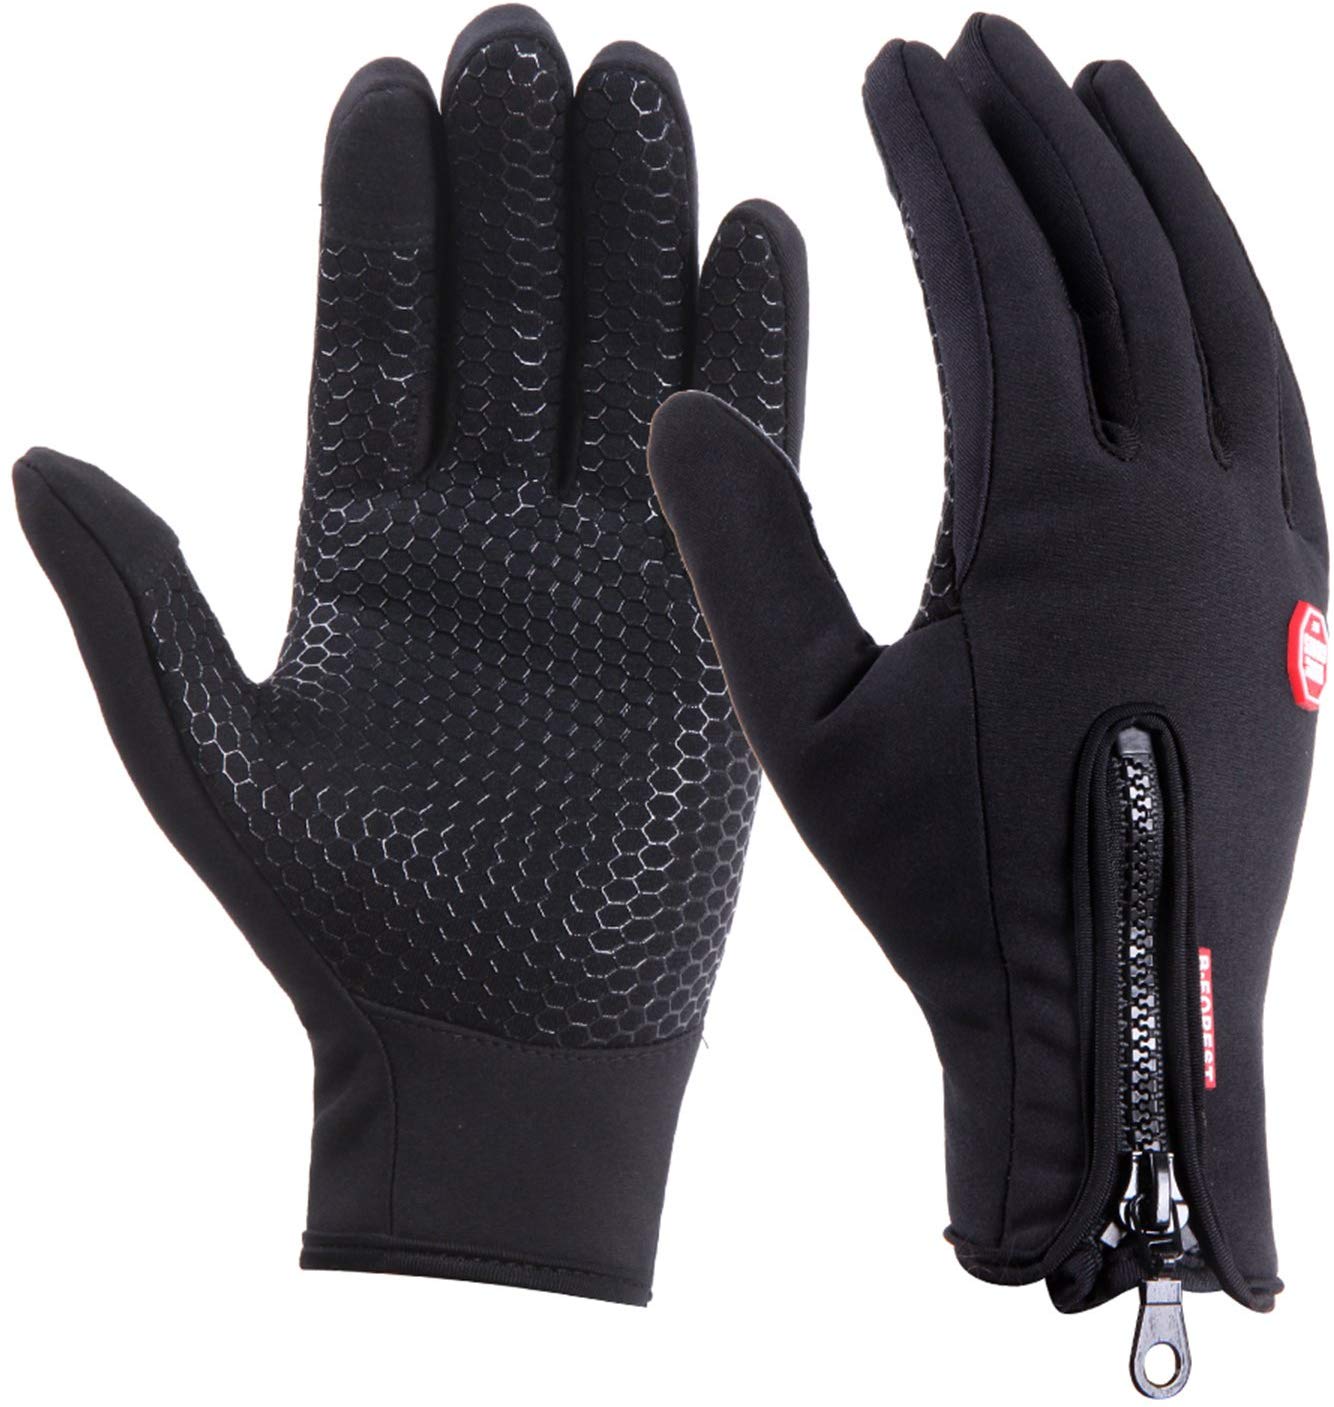 Winter Handschuhe Fahrradhandschuhe Thermo Winddicht Touchscreen DE 